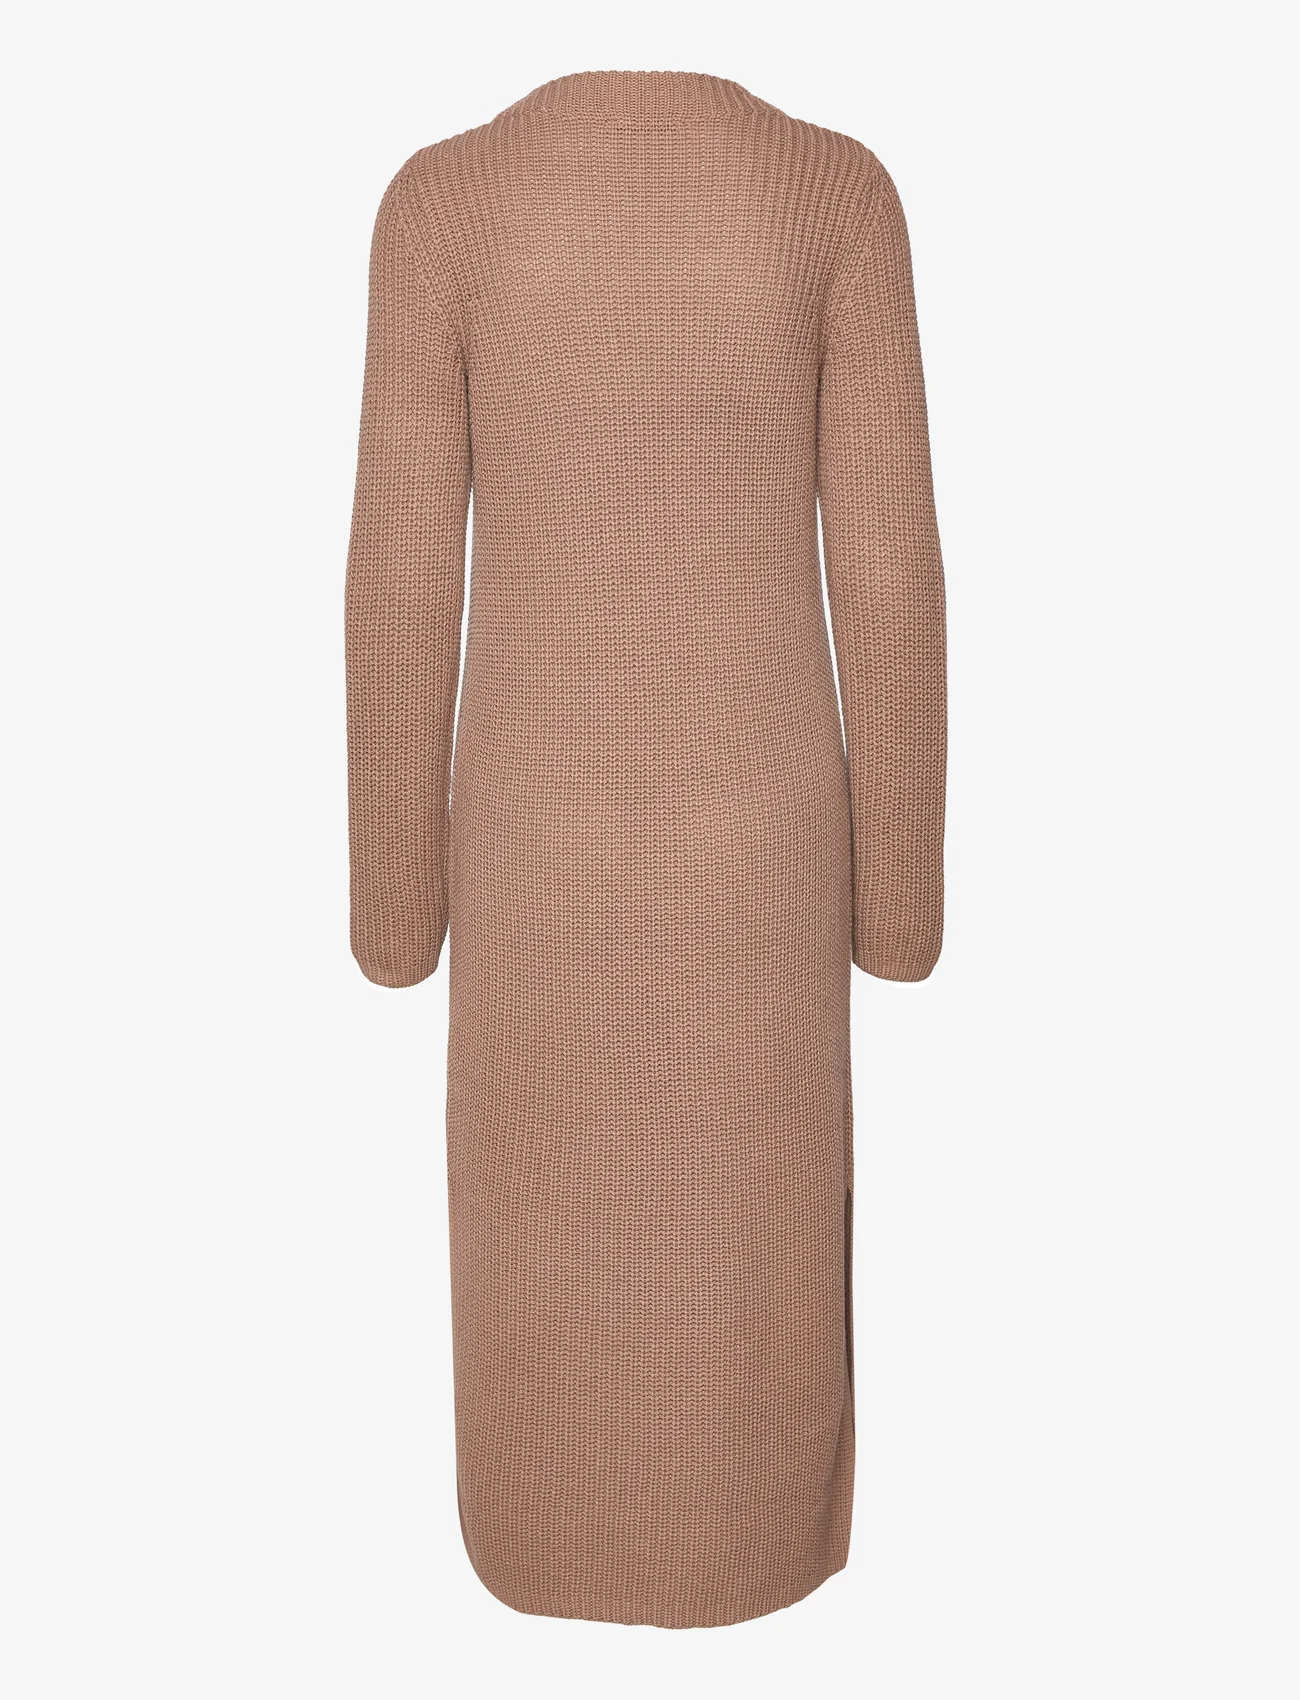 Esprit Casual - Knitted dress - stickade klänningar - taupe 5 - 1